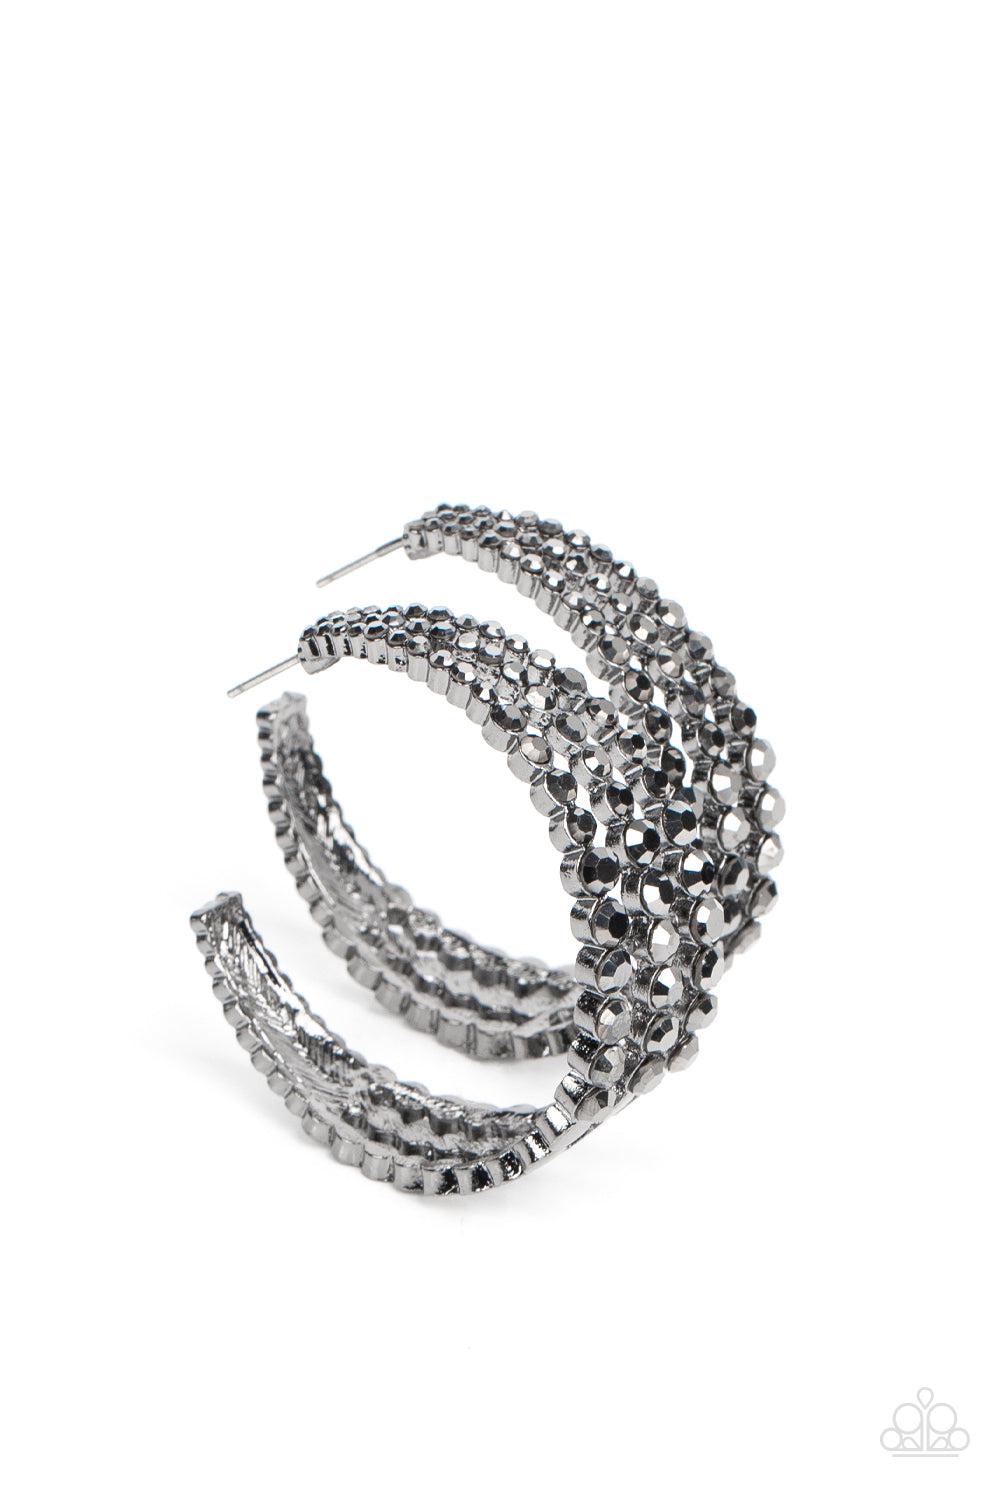 Cosmopolitan Cool Gunmetal Black &amp; Hematite Hoop Earrings- lightbox - CarasShop.com - $5 Jewelry by Cara Jewels